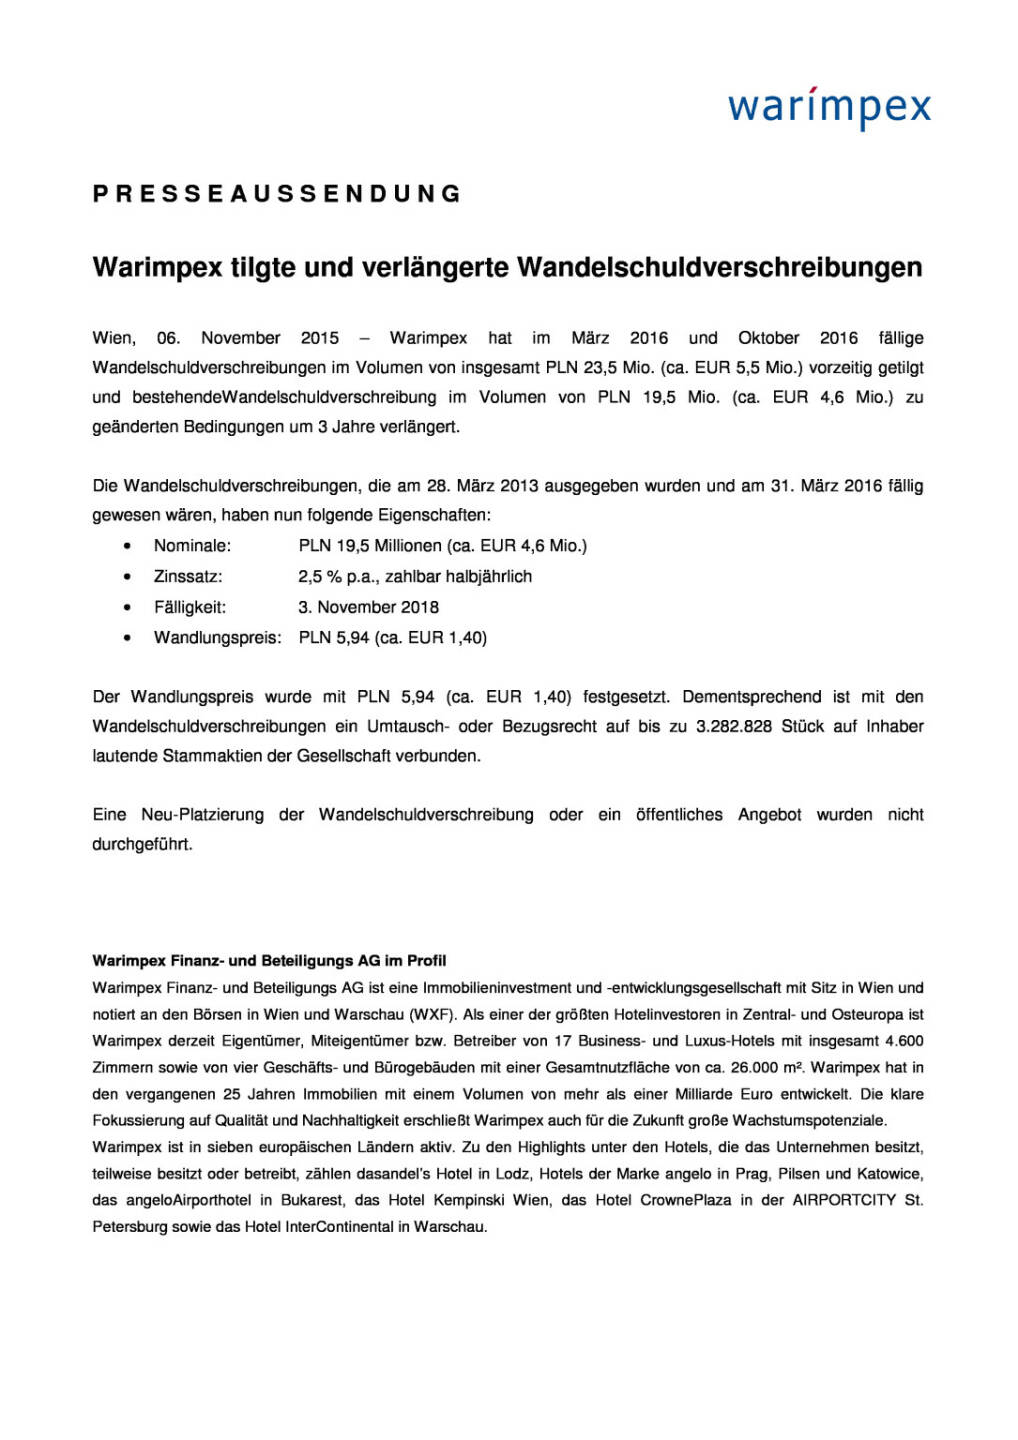 Warimpex tilgte und verlängerte Wandelschuldverschreibungen, Seite 1/2, komplettes Dokument unter http://boerse-social.com/static/uploads/file_455_warimpex_tilgte_und_verlangerte_wandelschuldverschreibungen.pdf